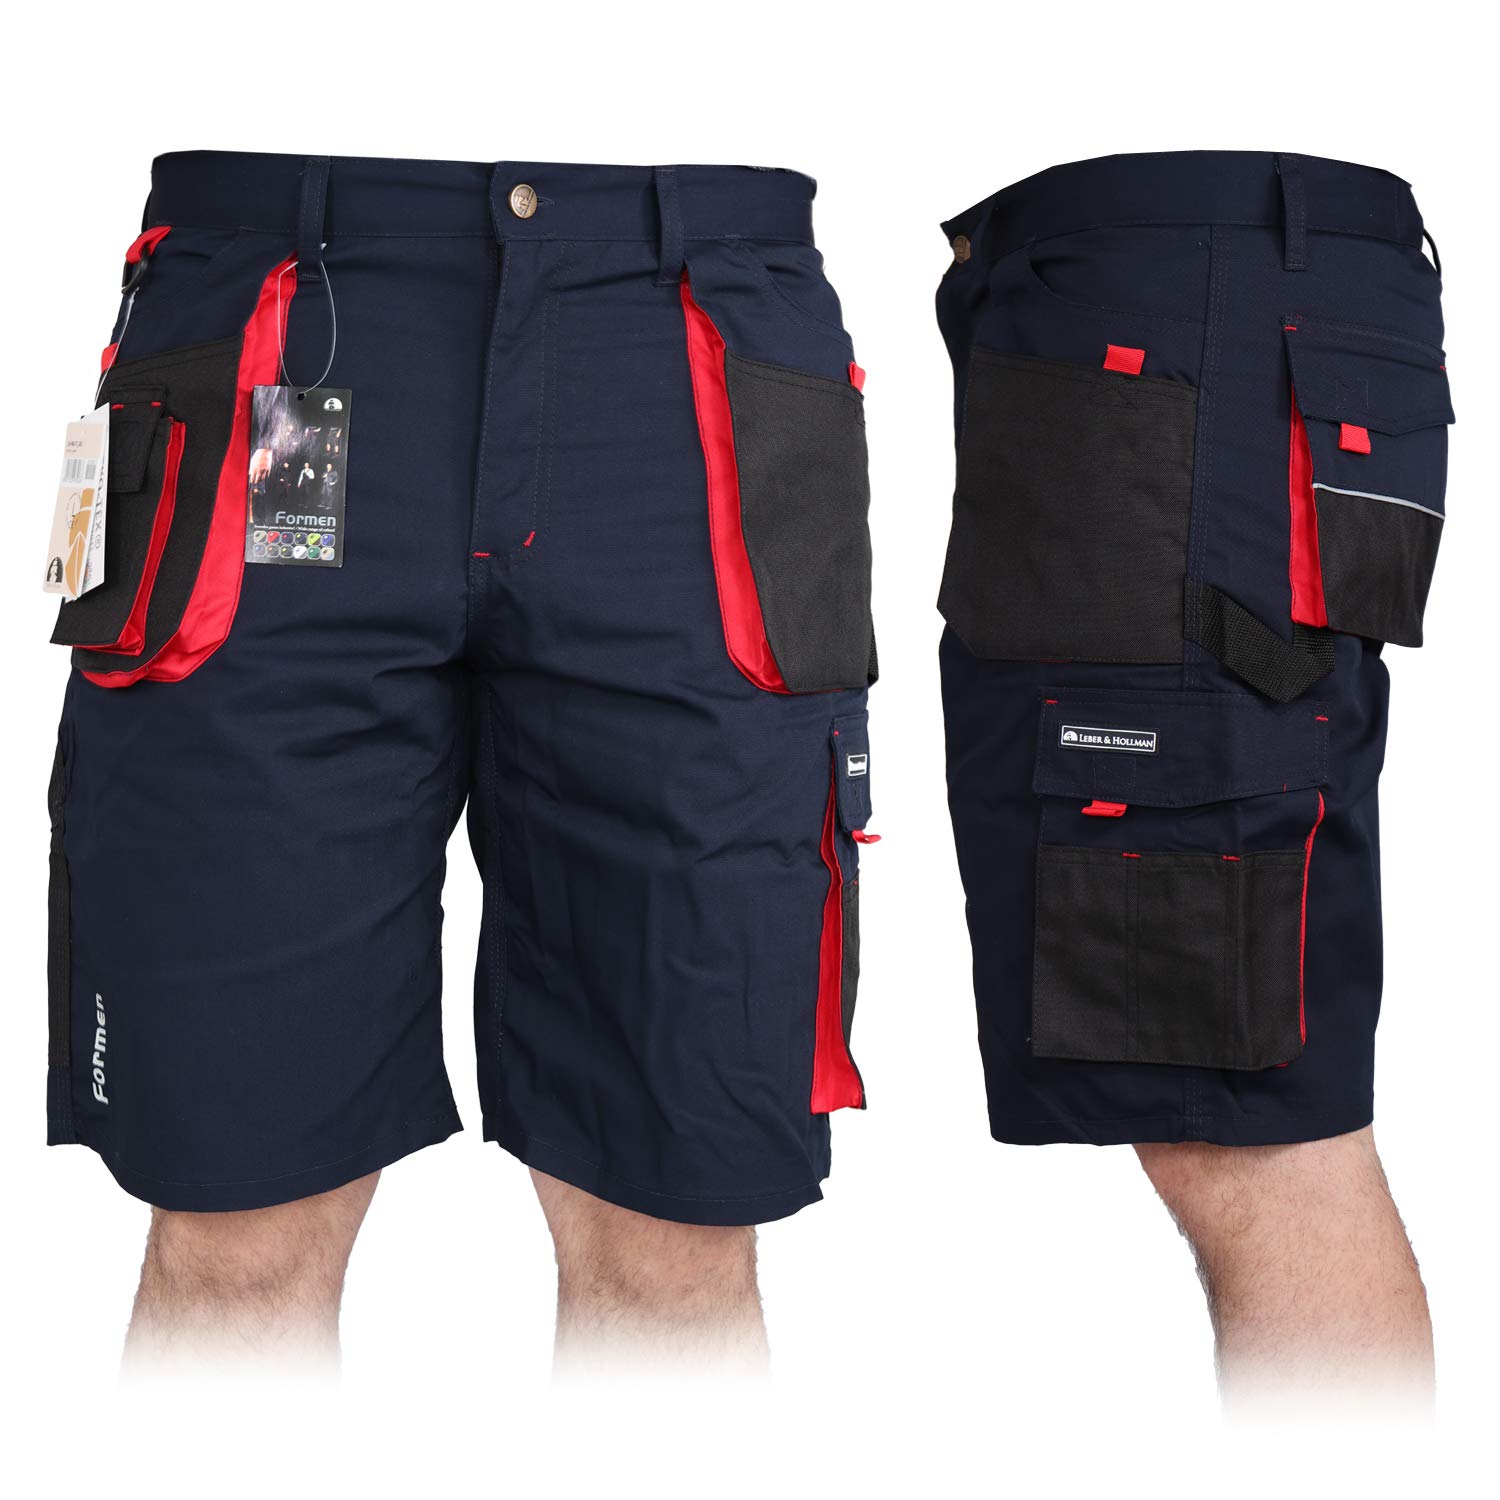 Kurze Arbeitshose für Herren, Bermuda Shorts Sommerhose Sicherheitshose Schutzhose Arbeitsbekleidung Sommer, Blau-Schwarz-Rot, XXXL